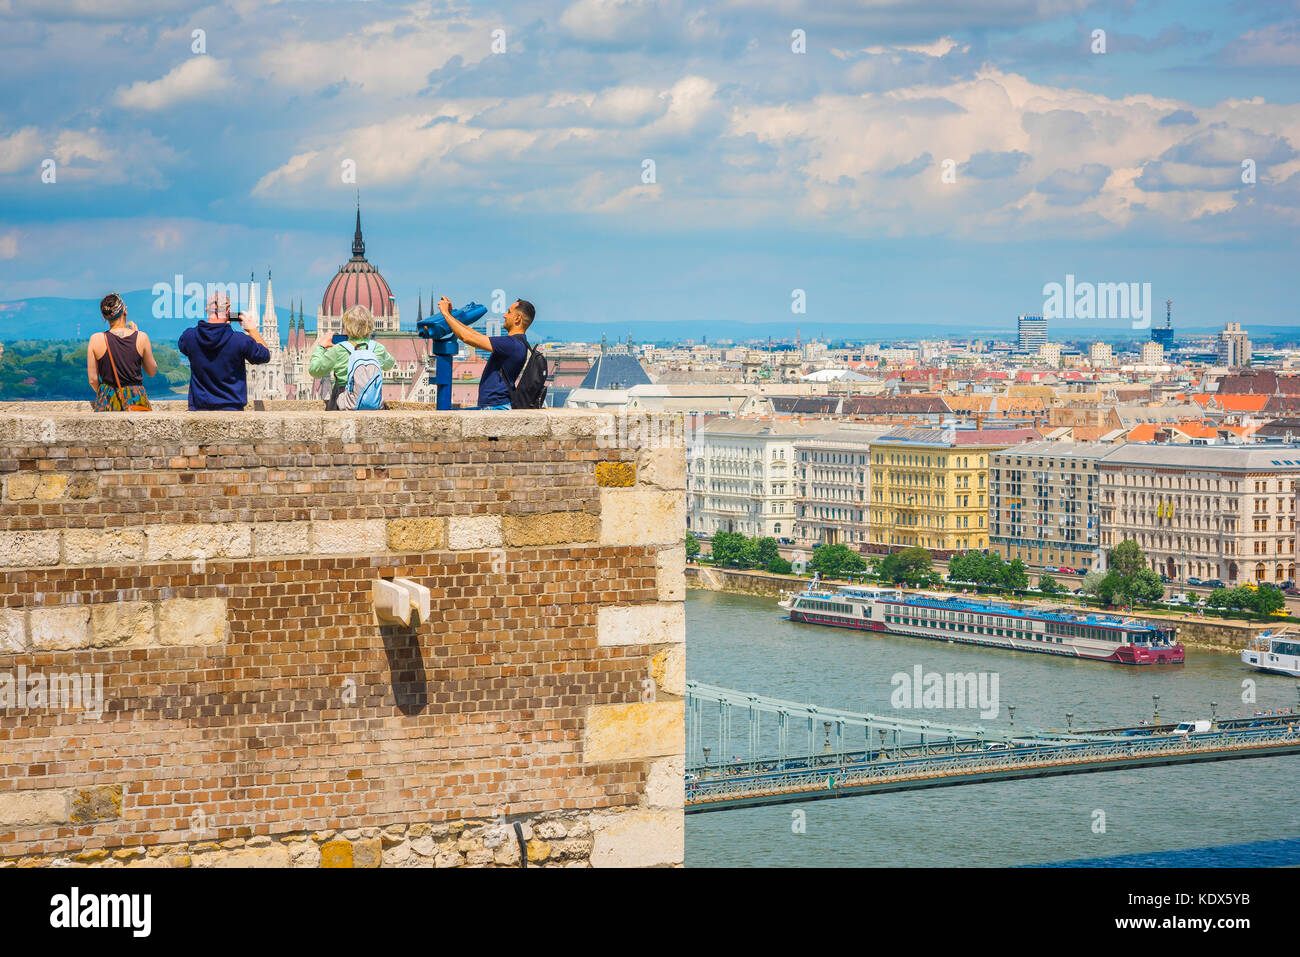 Le tourisme de la ville de Budapest, vue des touristes visitant le Palais Royal sur la colline du Var en prenant des photos de Budapest depuis un rempart au-dessus de la ville, Hongrie. Banque D'Images